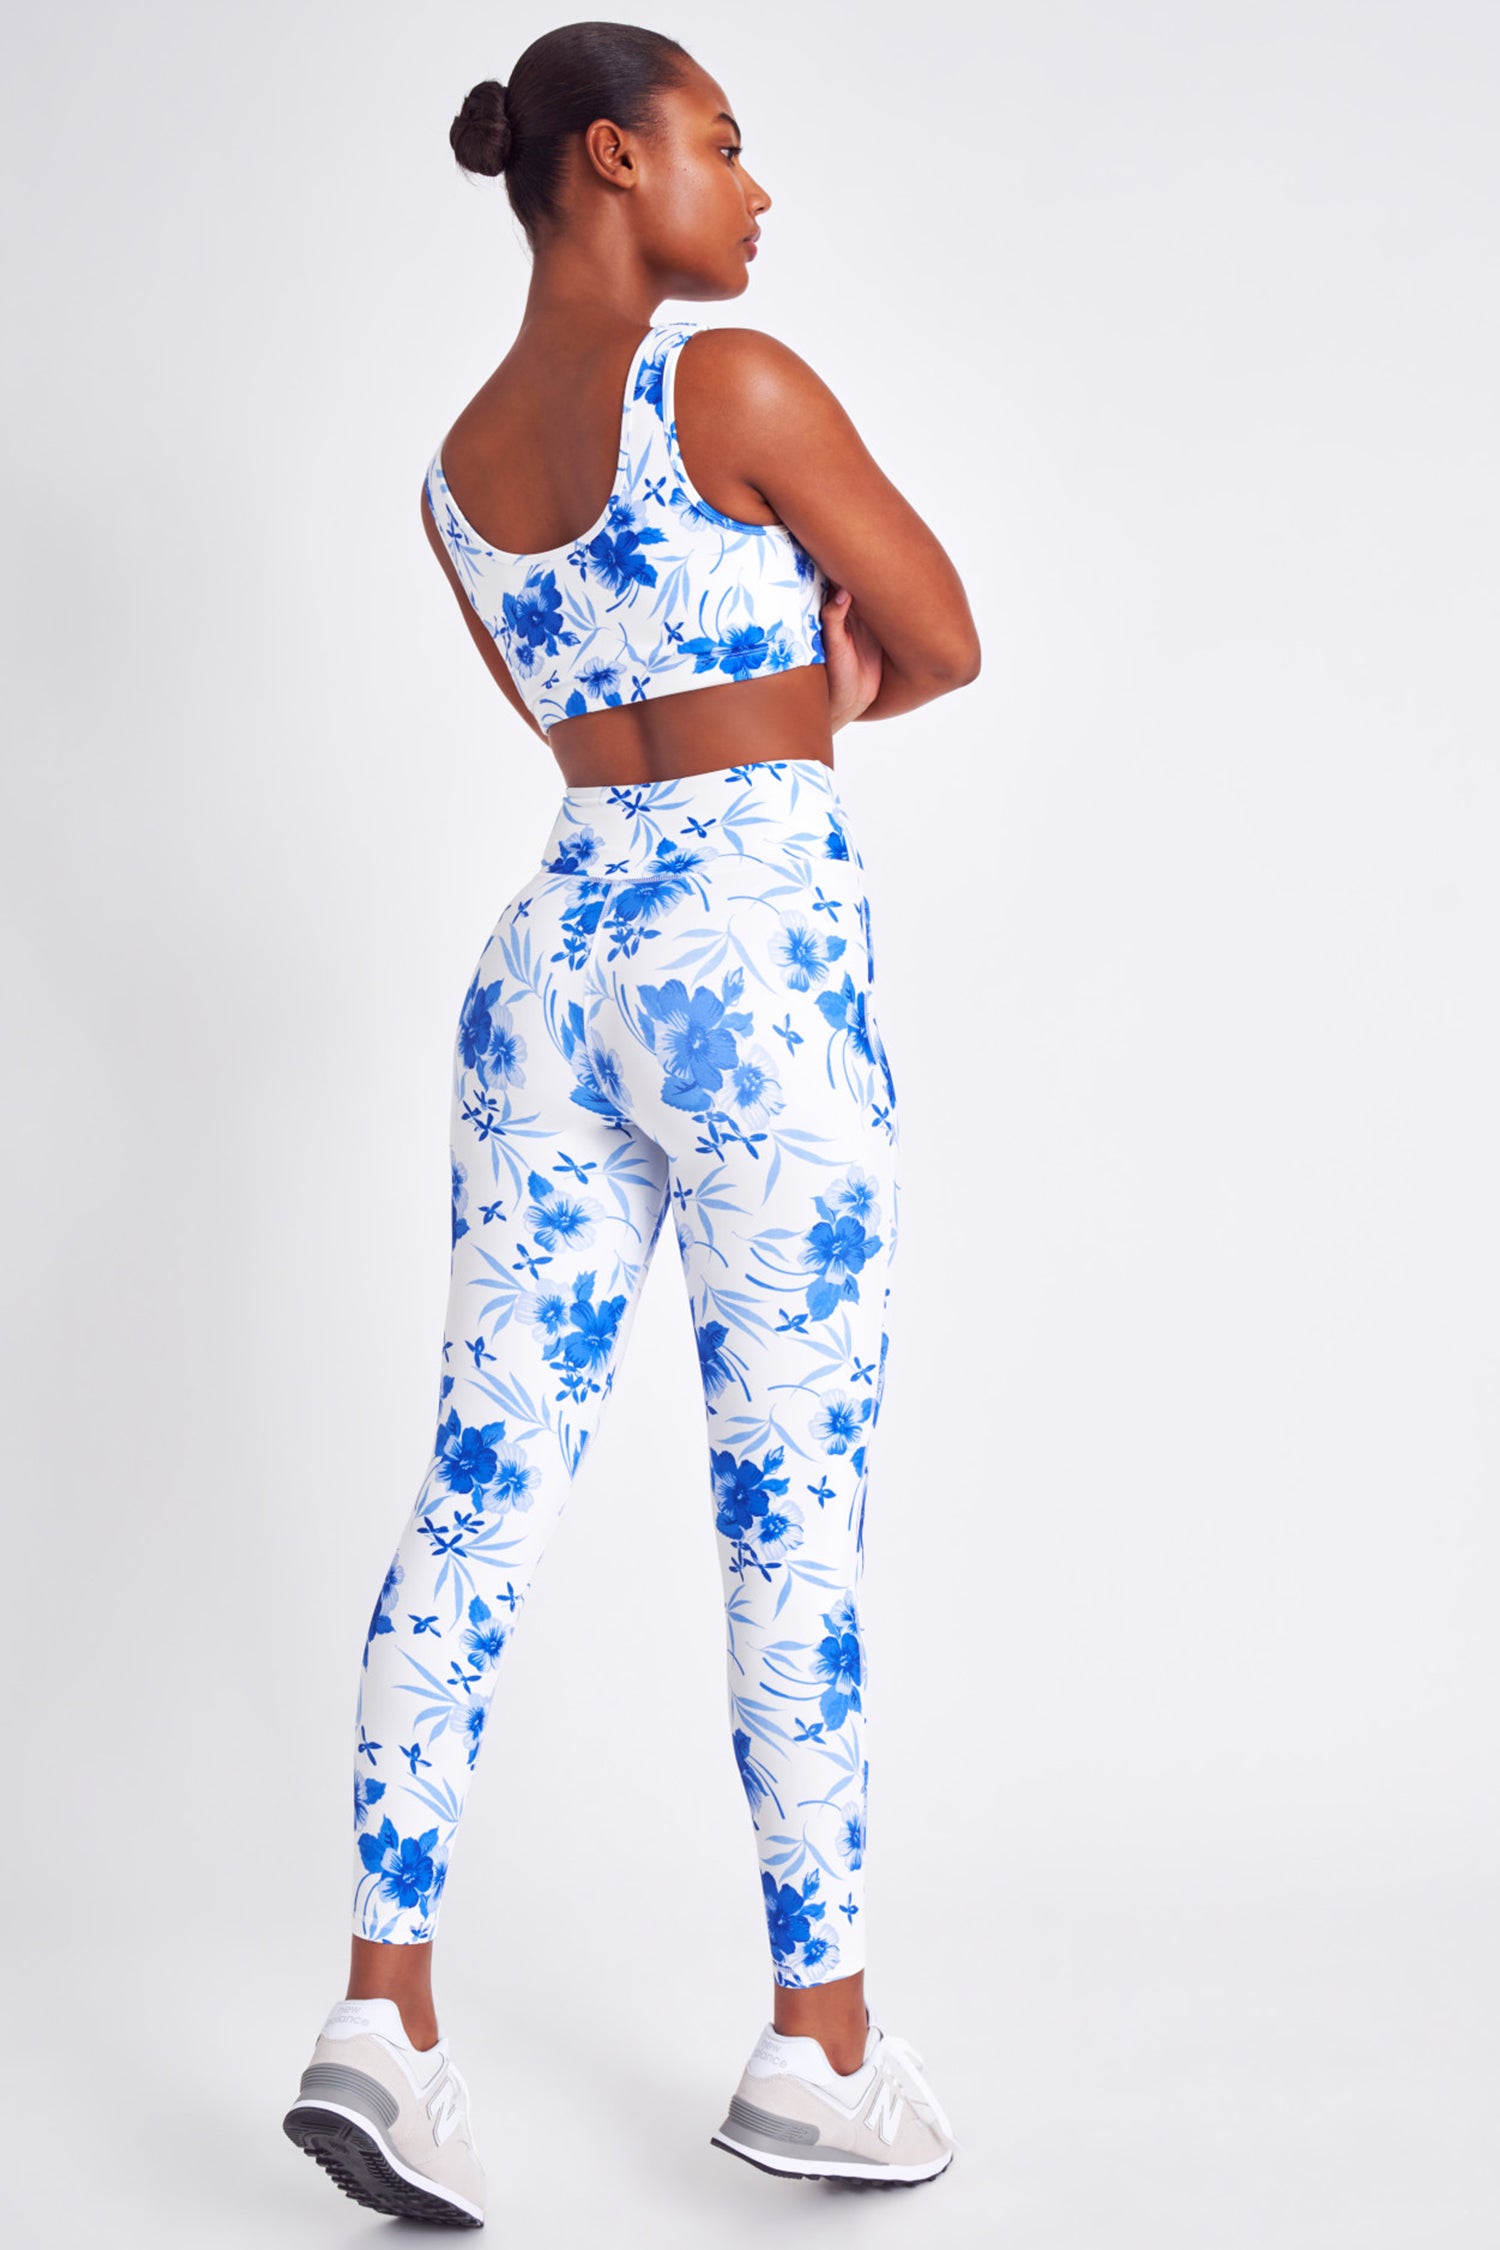 nemen duim Duiker Adries Blue Floral Legging - Women's Activewear | Shop LoveShackFancy.com